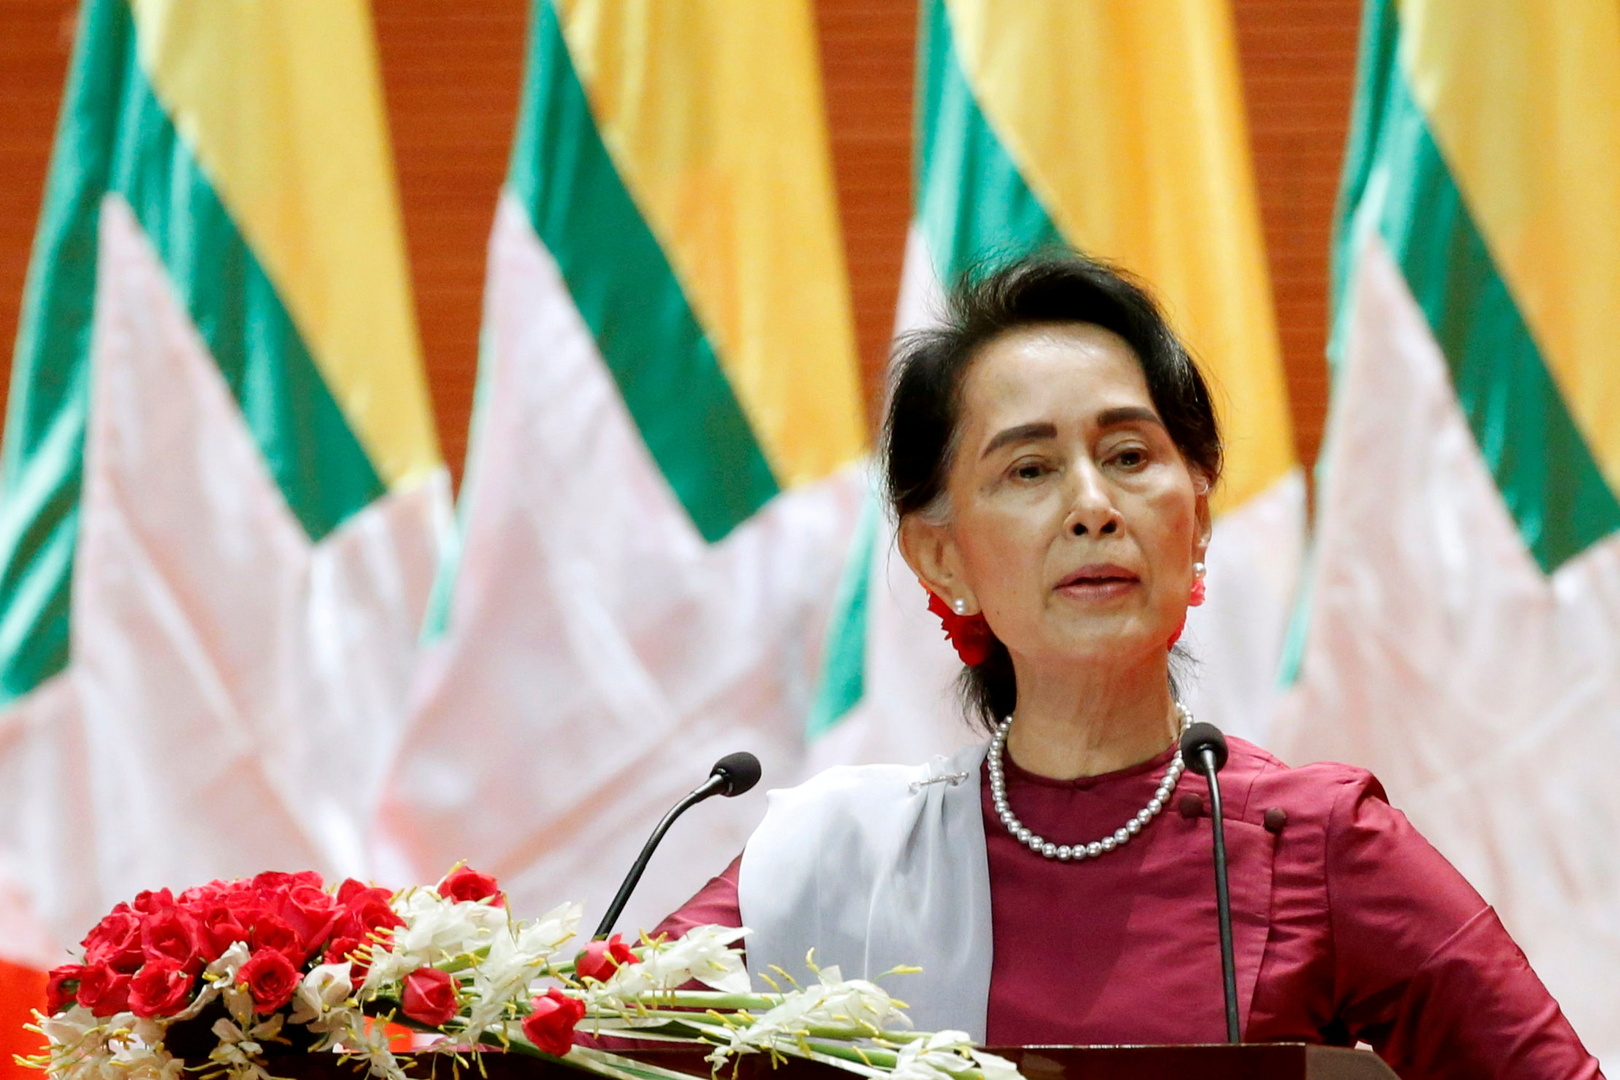 رئيس المجلس العسكري الحاكم في ميانمار: الزعيم المعتقلة بصحة جيدة وستمثل أمام القضاء خلال أيام